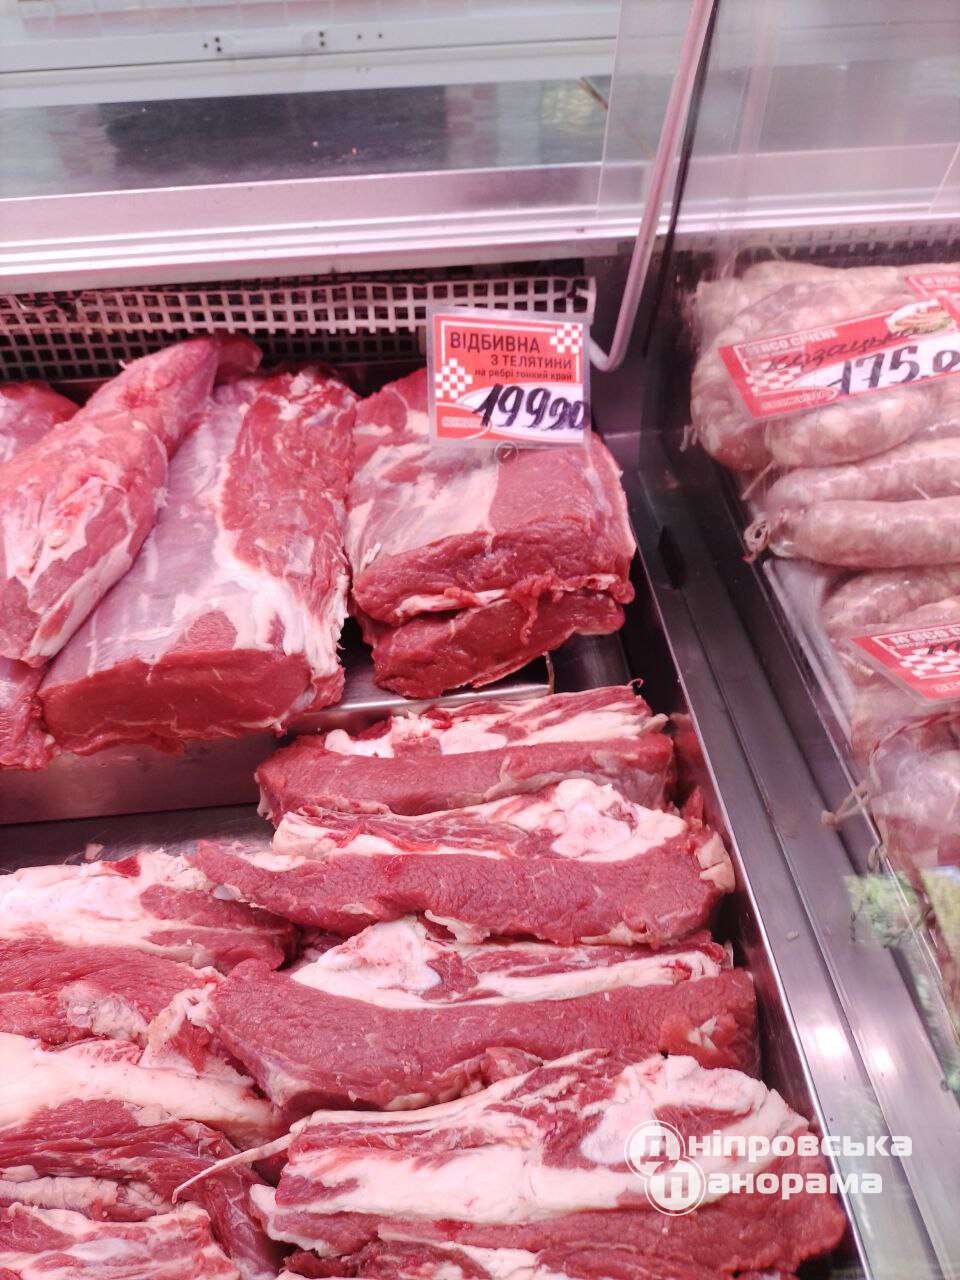 цены на мясо и сало Днепр